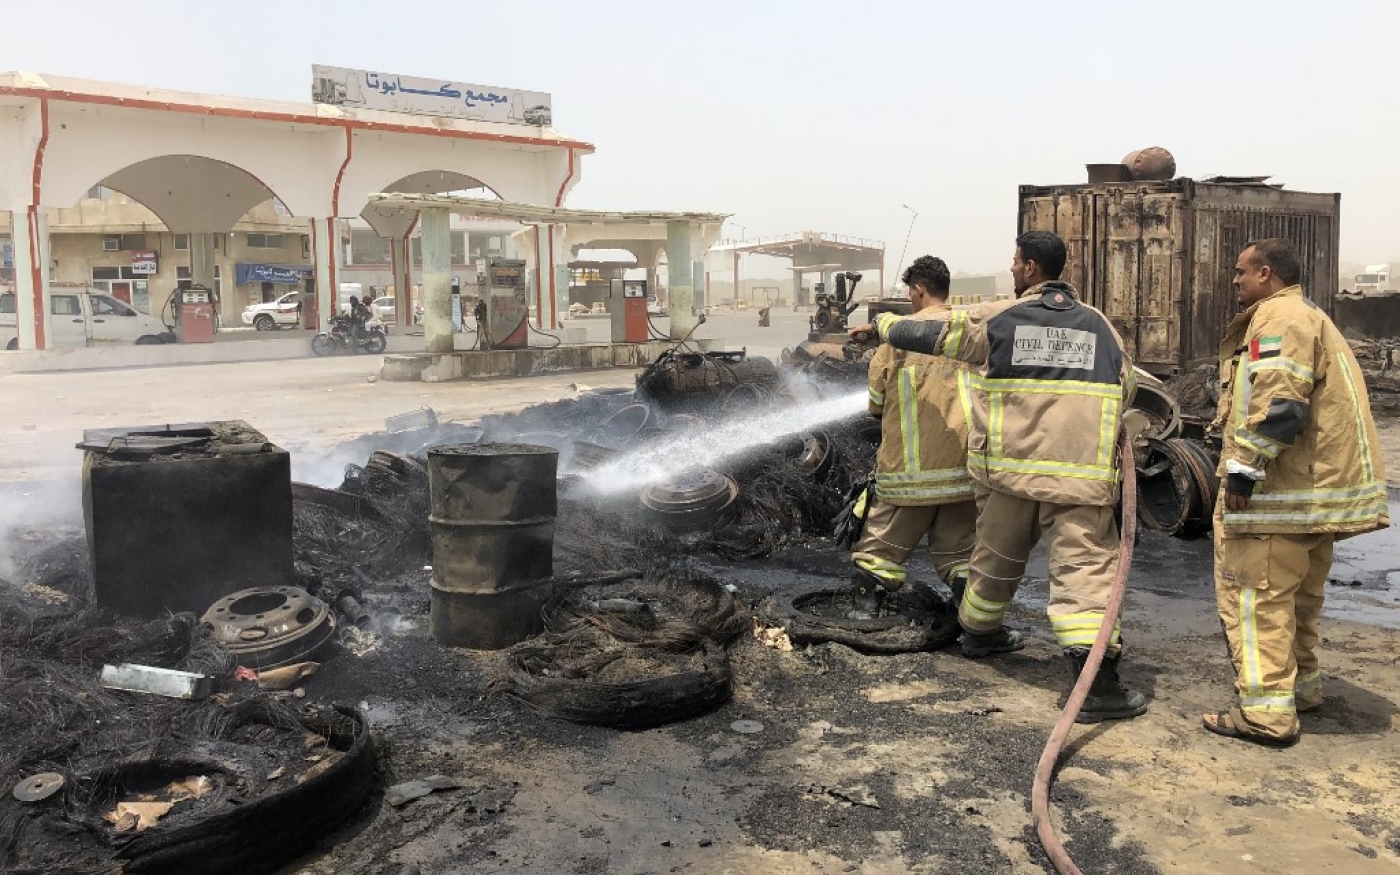 Les pompiers éteignent un incendie à la suite d’affrontements dans le quartier de Mansoura à Aden, dimanche (AFP)